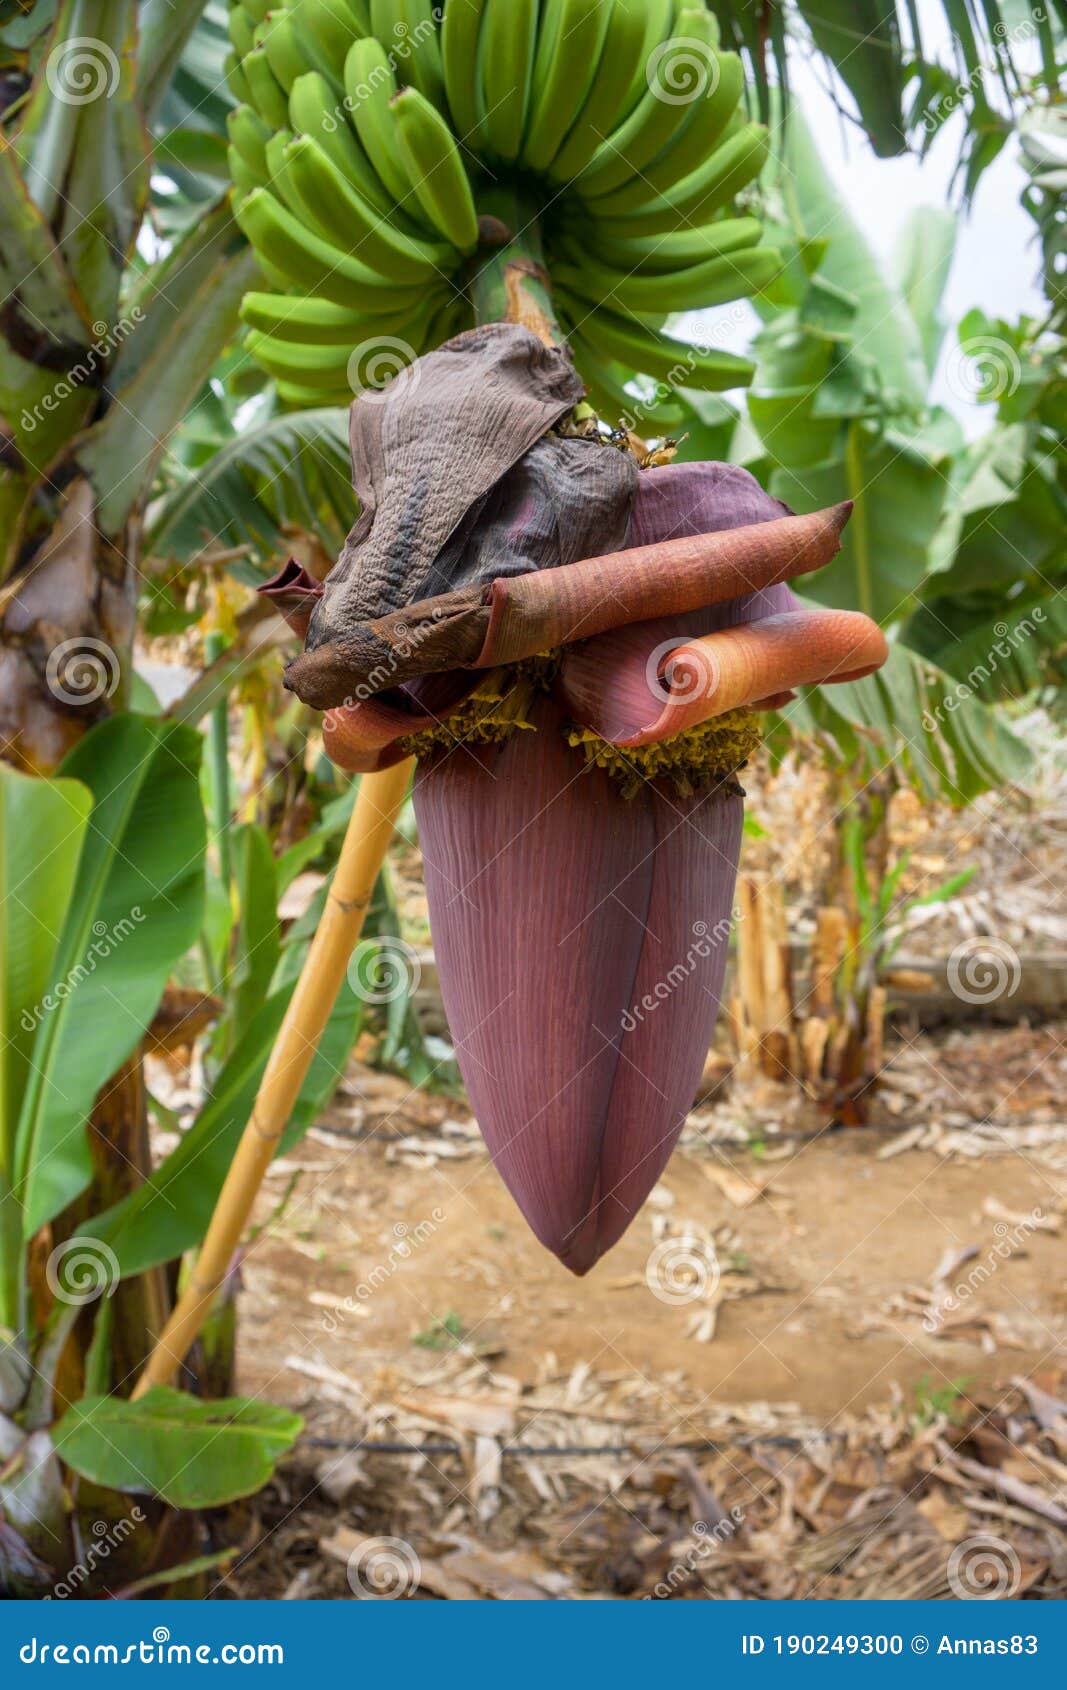 banana flower. banana blossom with a hand of bananas on a plant. banana plantation in san juan de la rambla, tenerife, canary isla